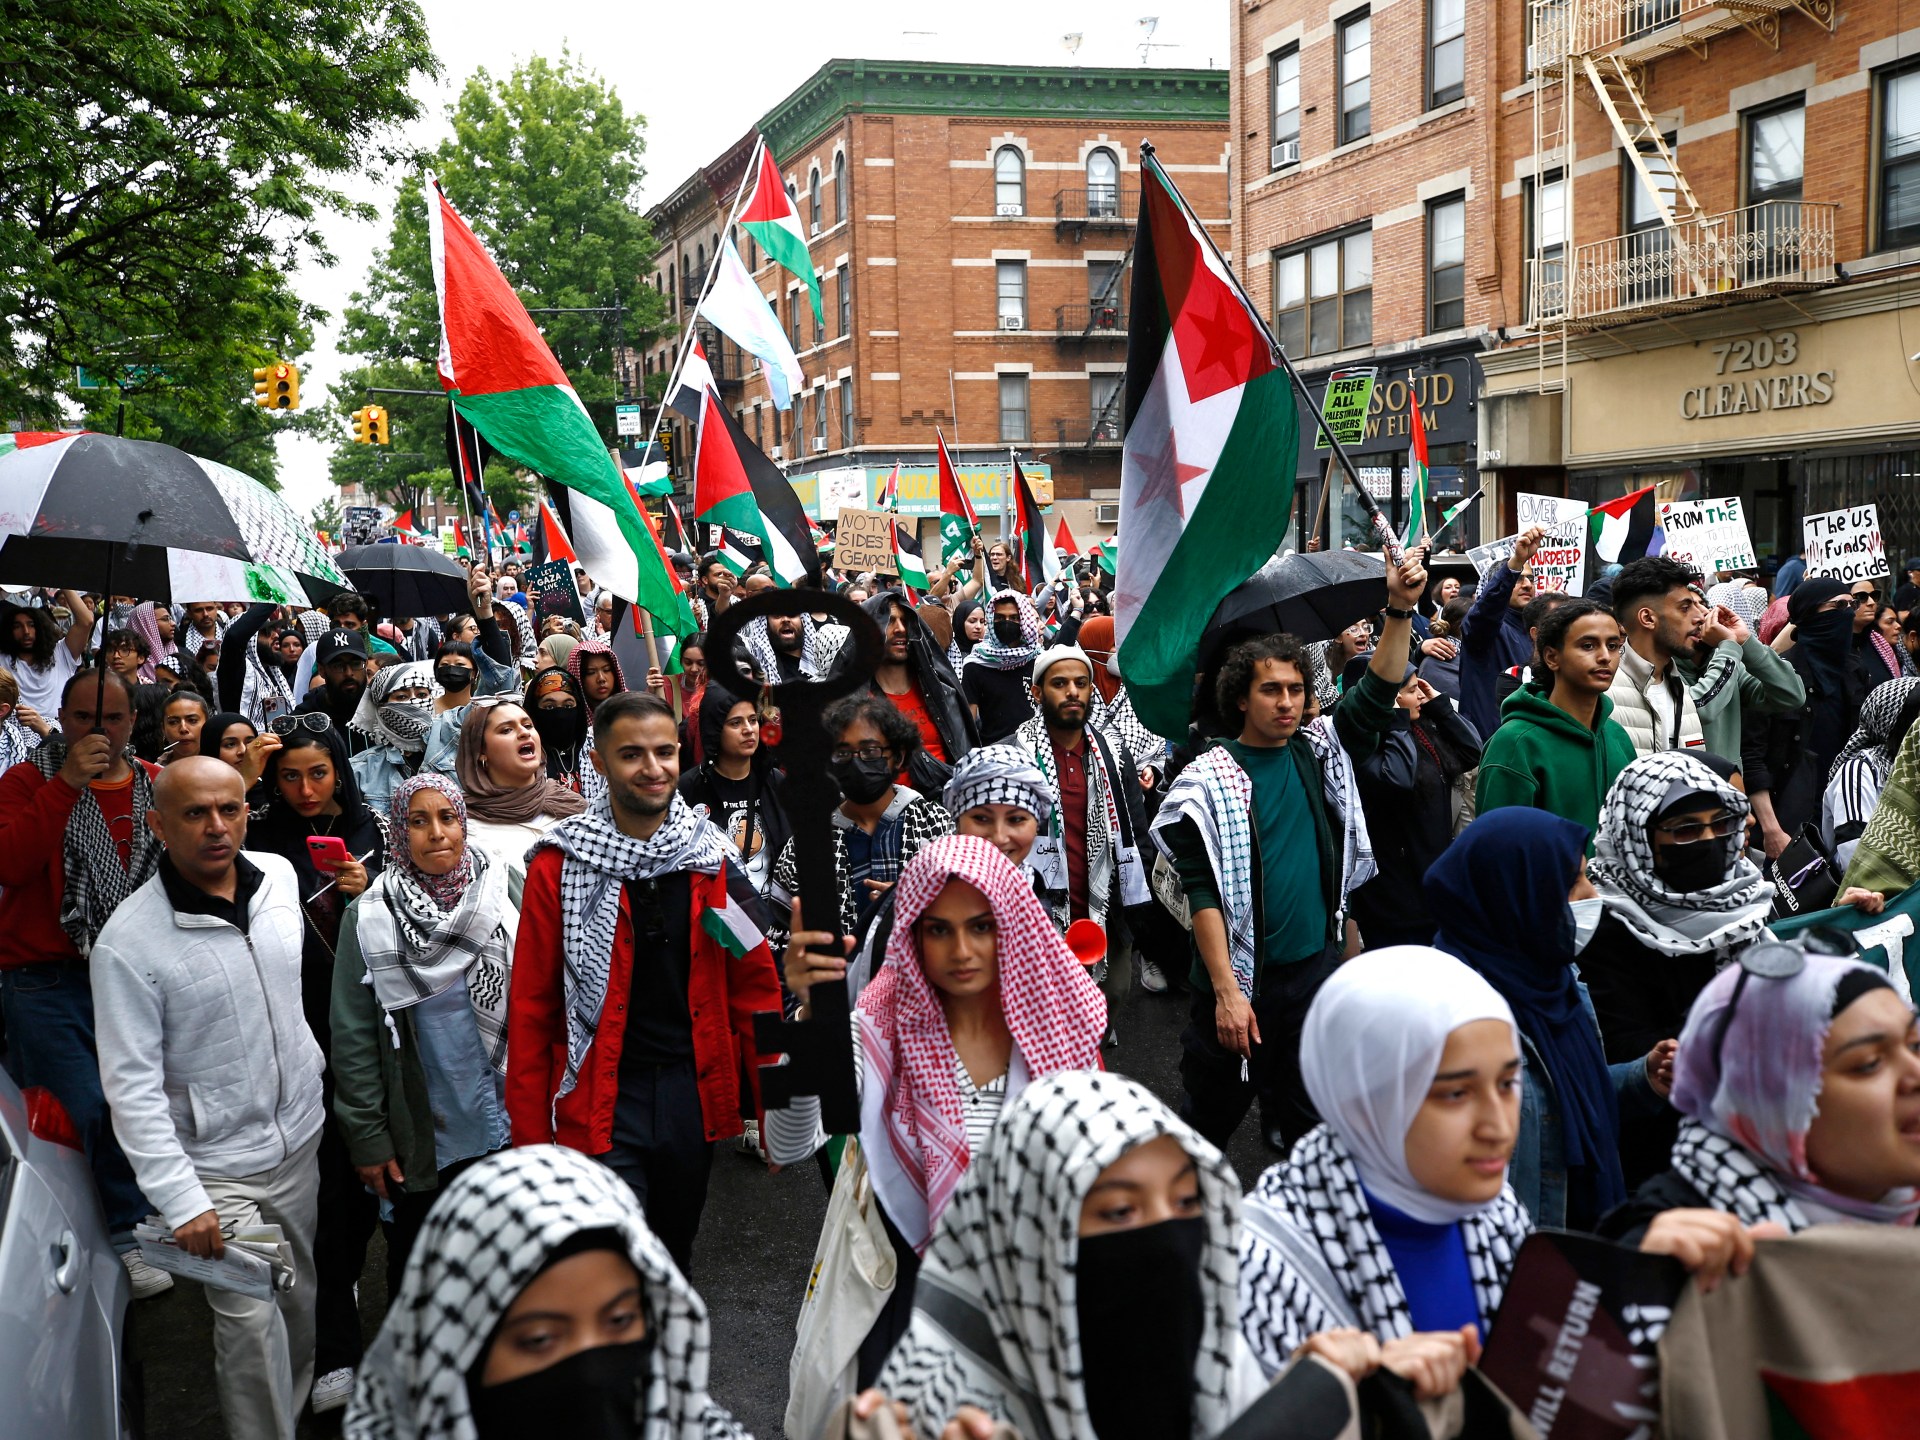 شرطة نيويورك تعتقل بالعنف متظاهرين مؤيدين لفلسطين بمناسبة ذكرى النكبة |  أخبار الحرب الإسرائيلية على غزة